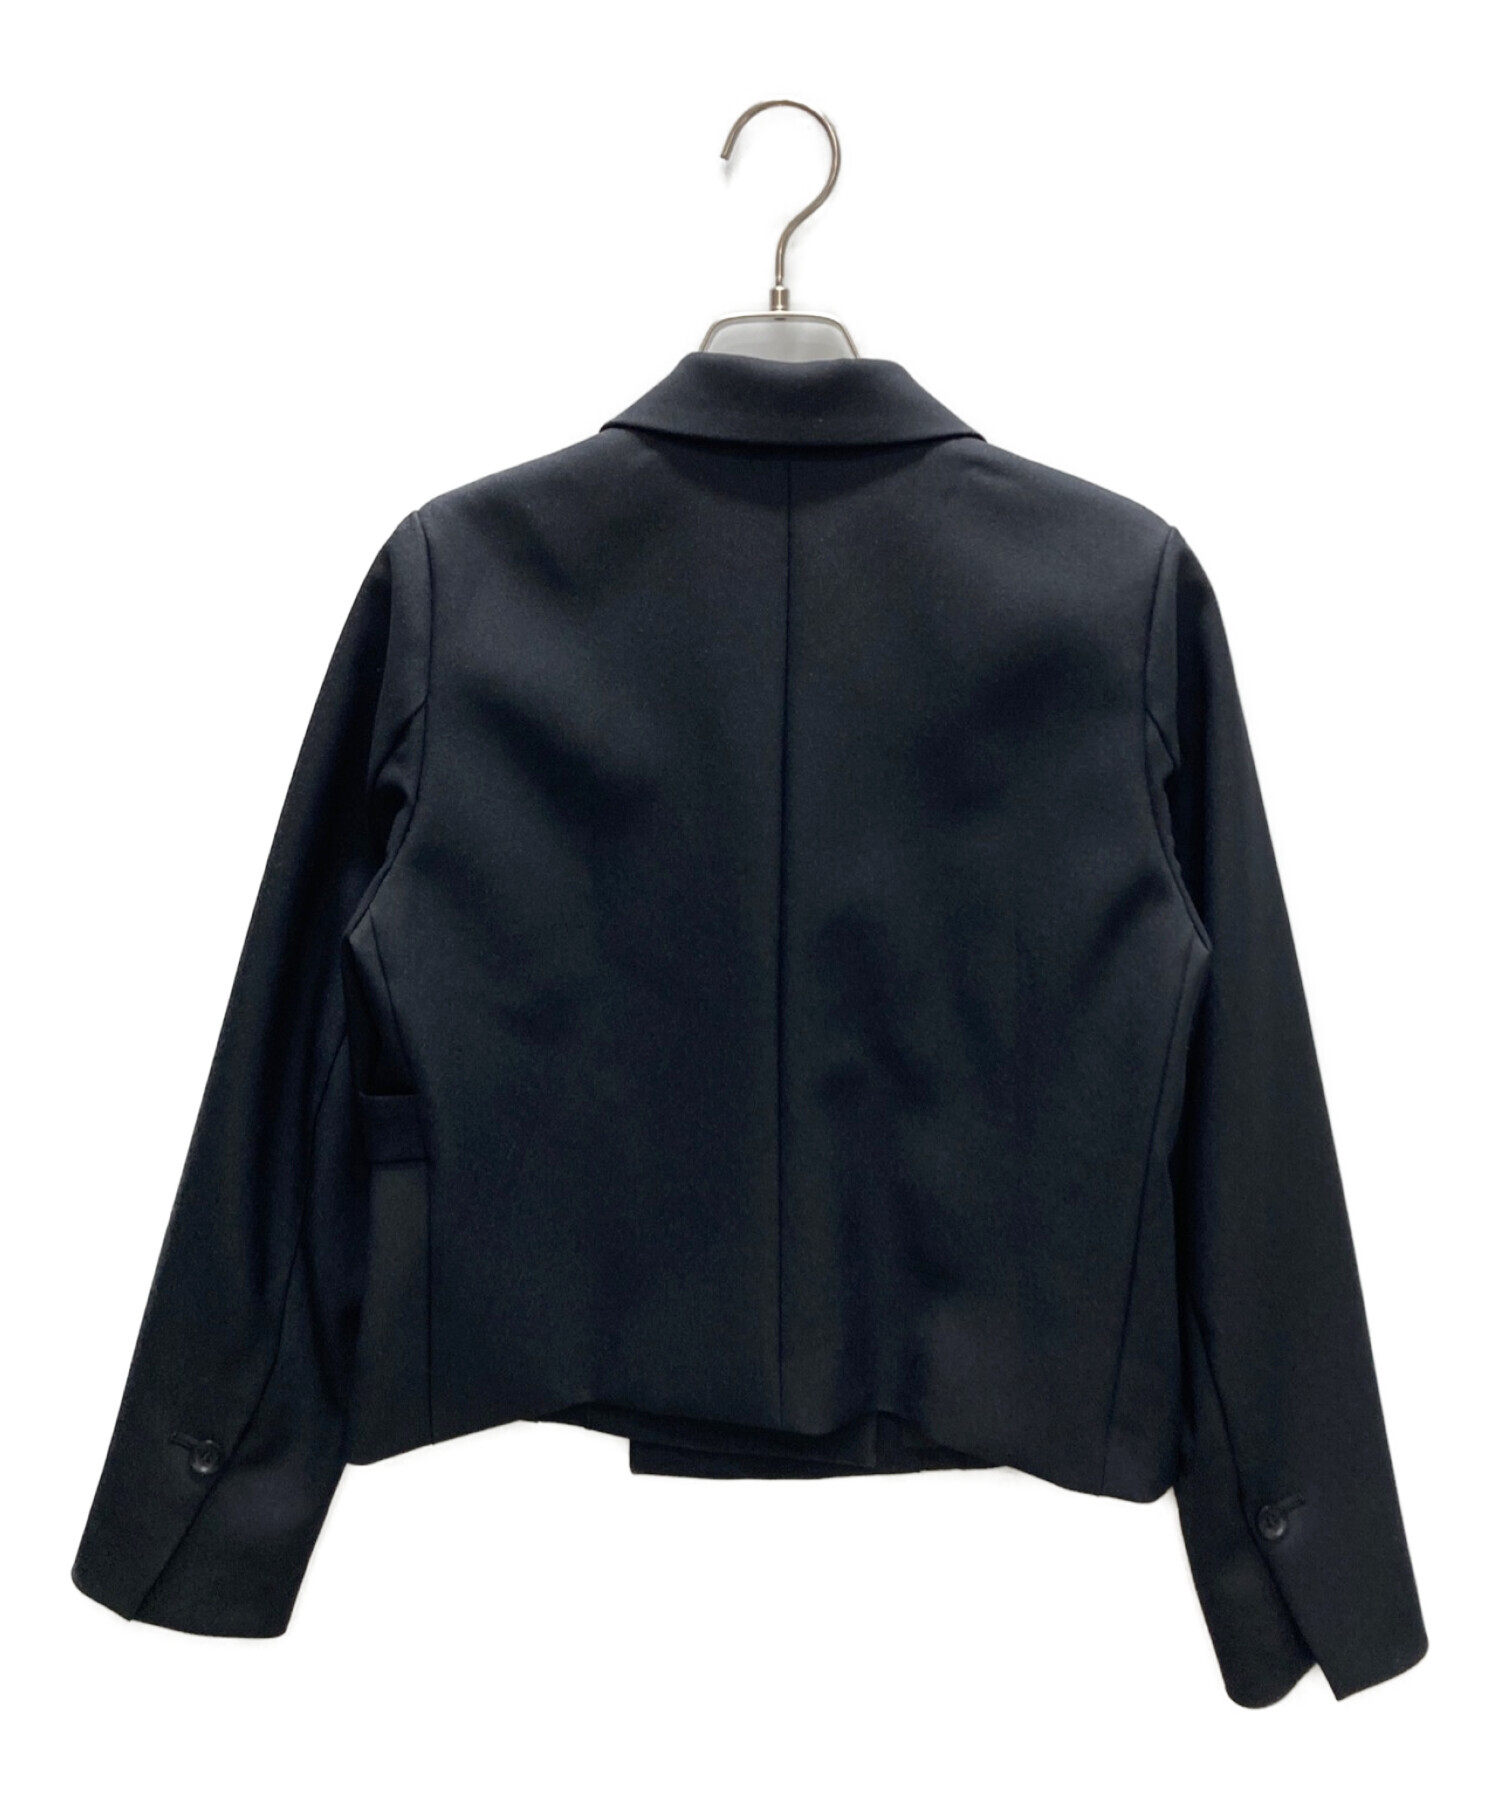 UNITED TOKYO (ユナイテッドトウキョウ) コールバスクショートジャケット ブラック サイズ:1 未使用品